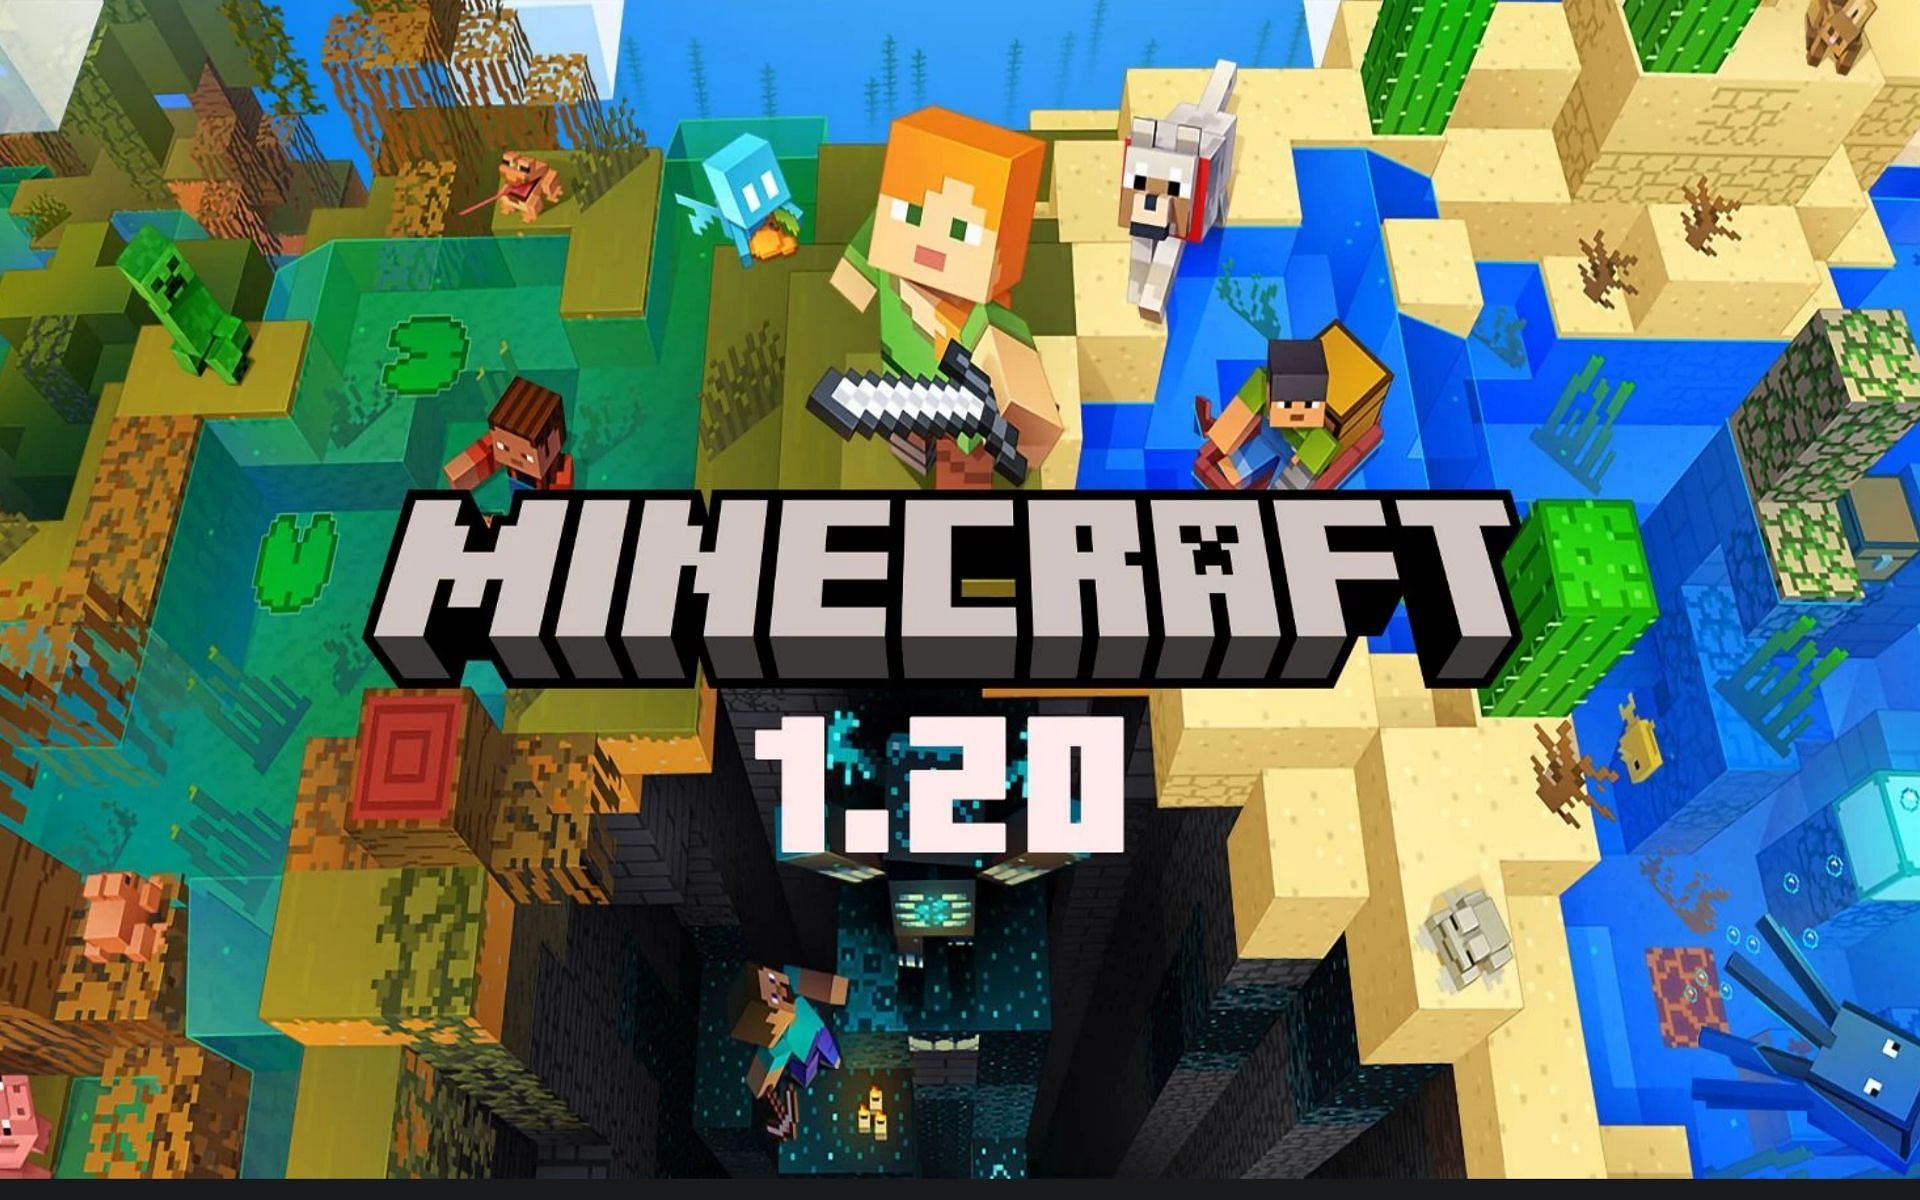 Minecraft Beta & Preview - 1.20.50.20 – Minecraft Feedback